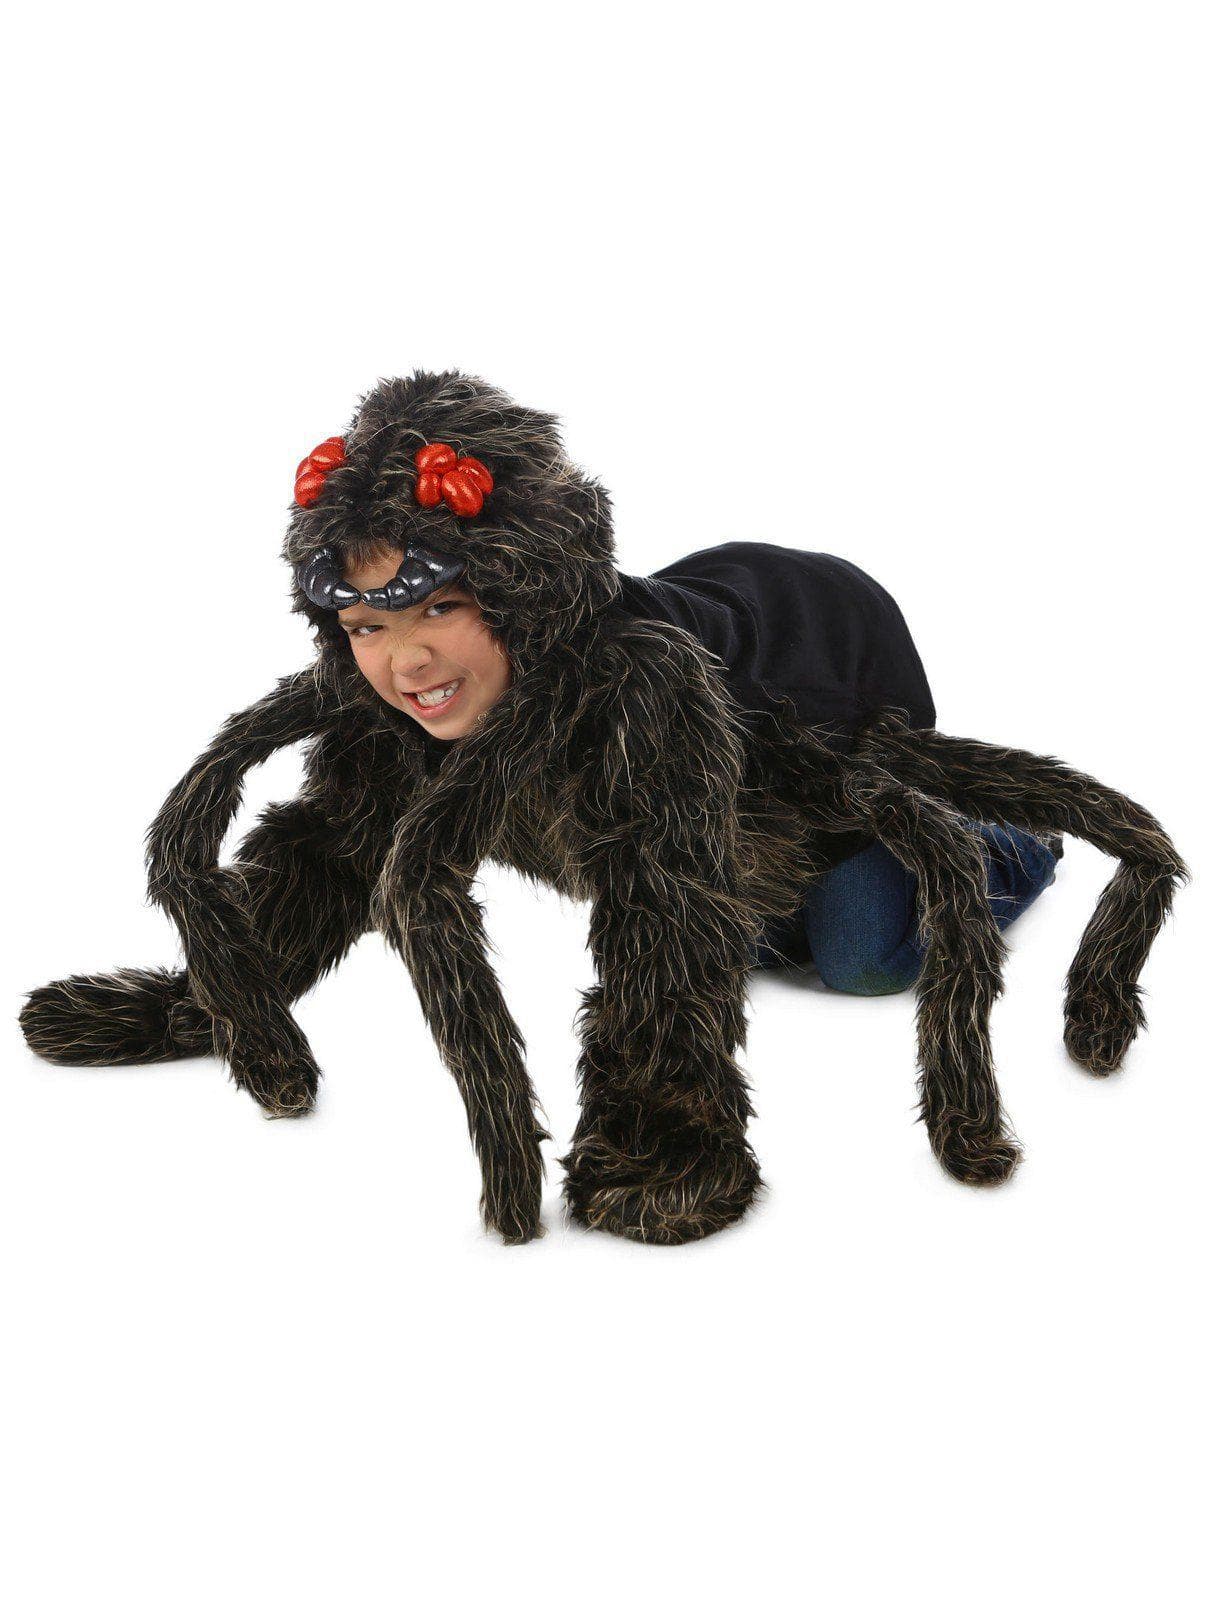 Kid's Tarantula Hoodie Costume - costumes.com